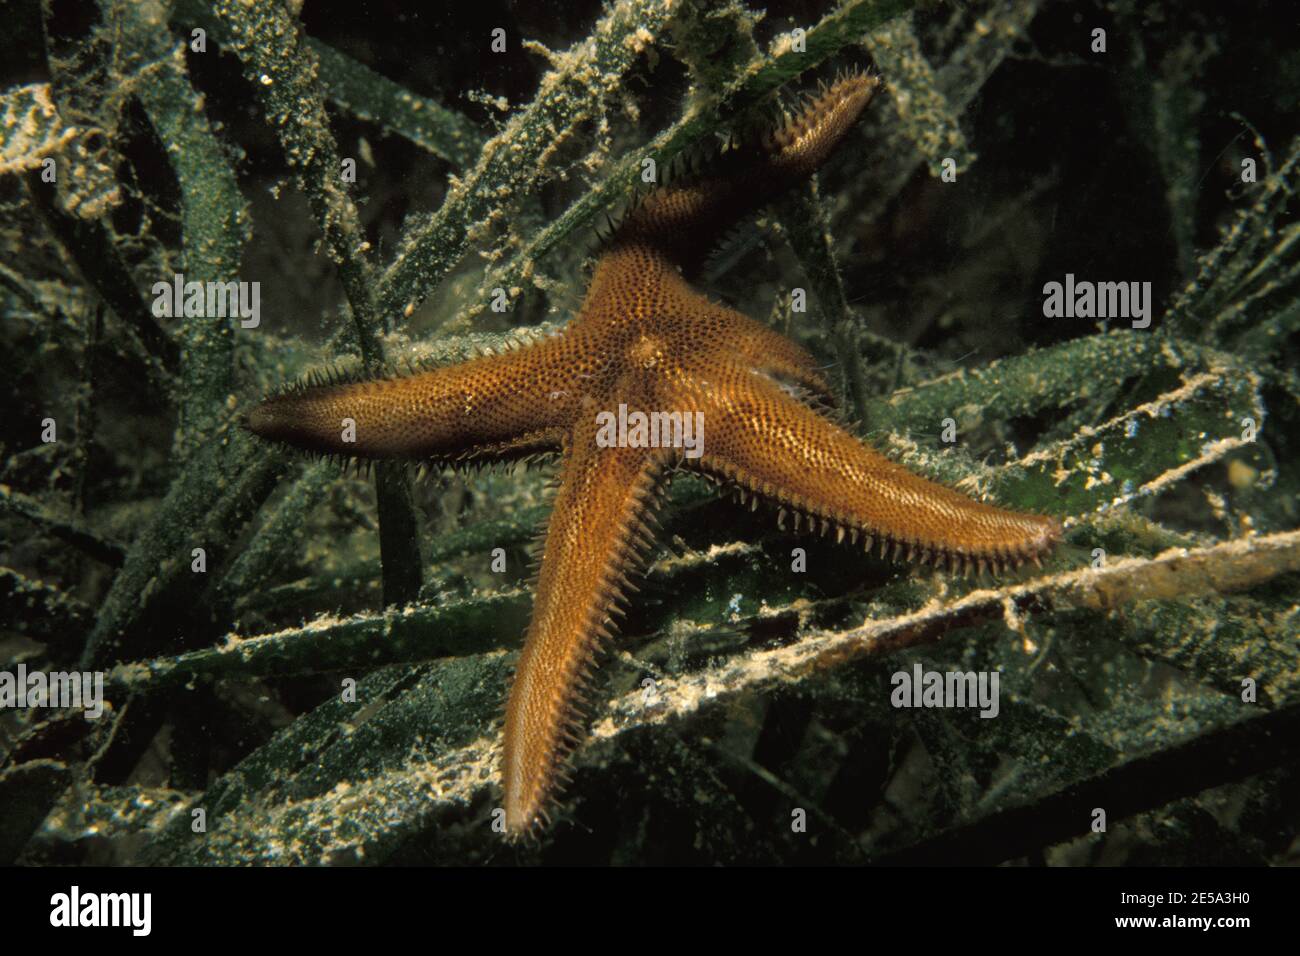 Astropecten spinulosus, slender sand star, Kletter-Kammssestern Stock Photo